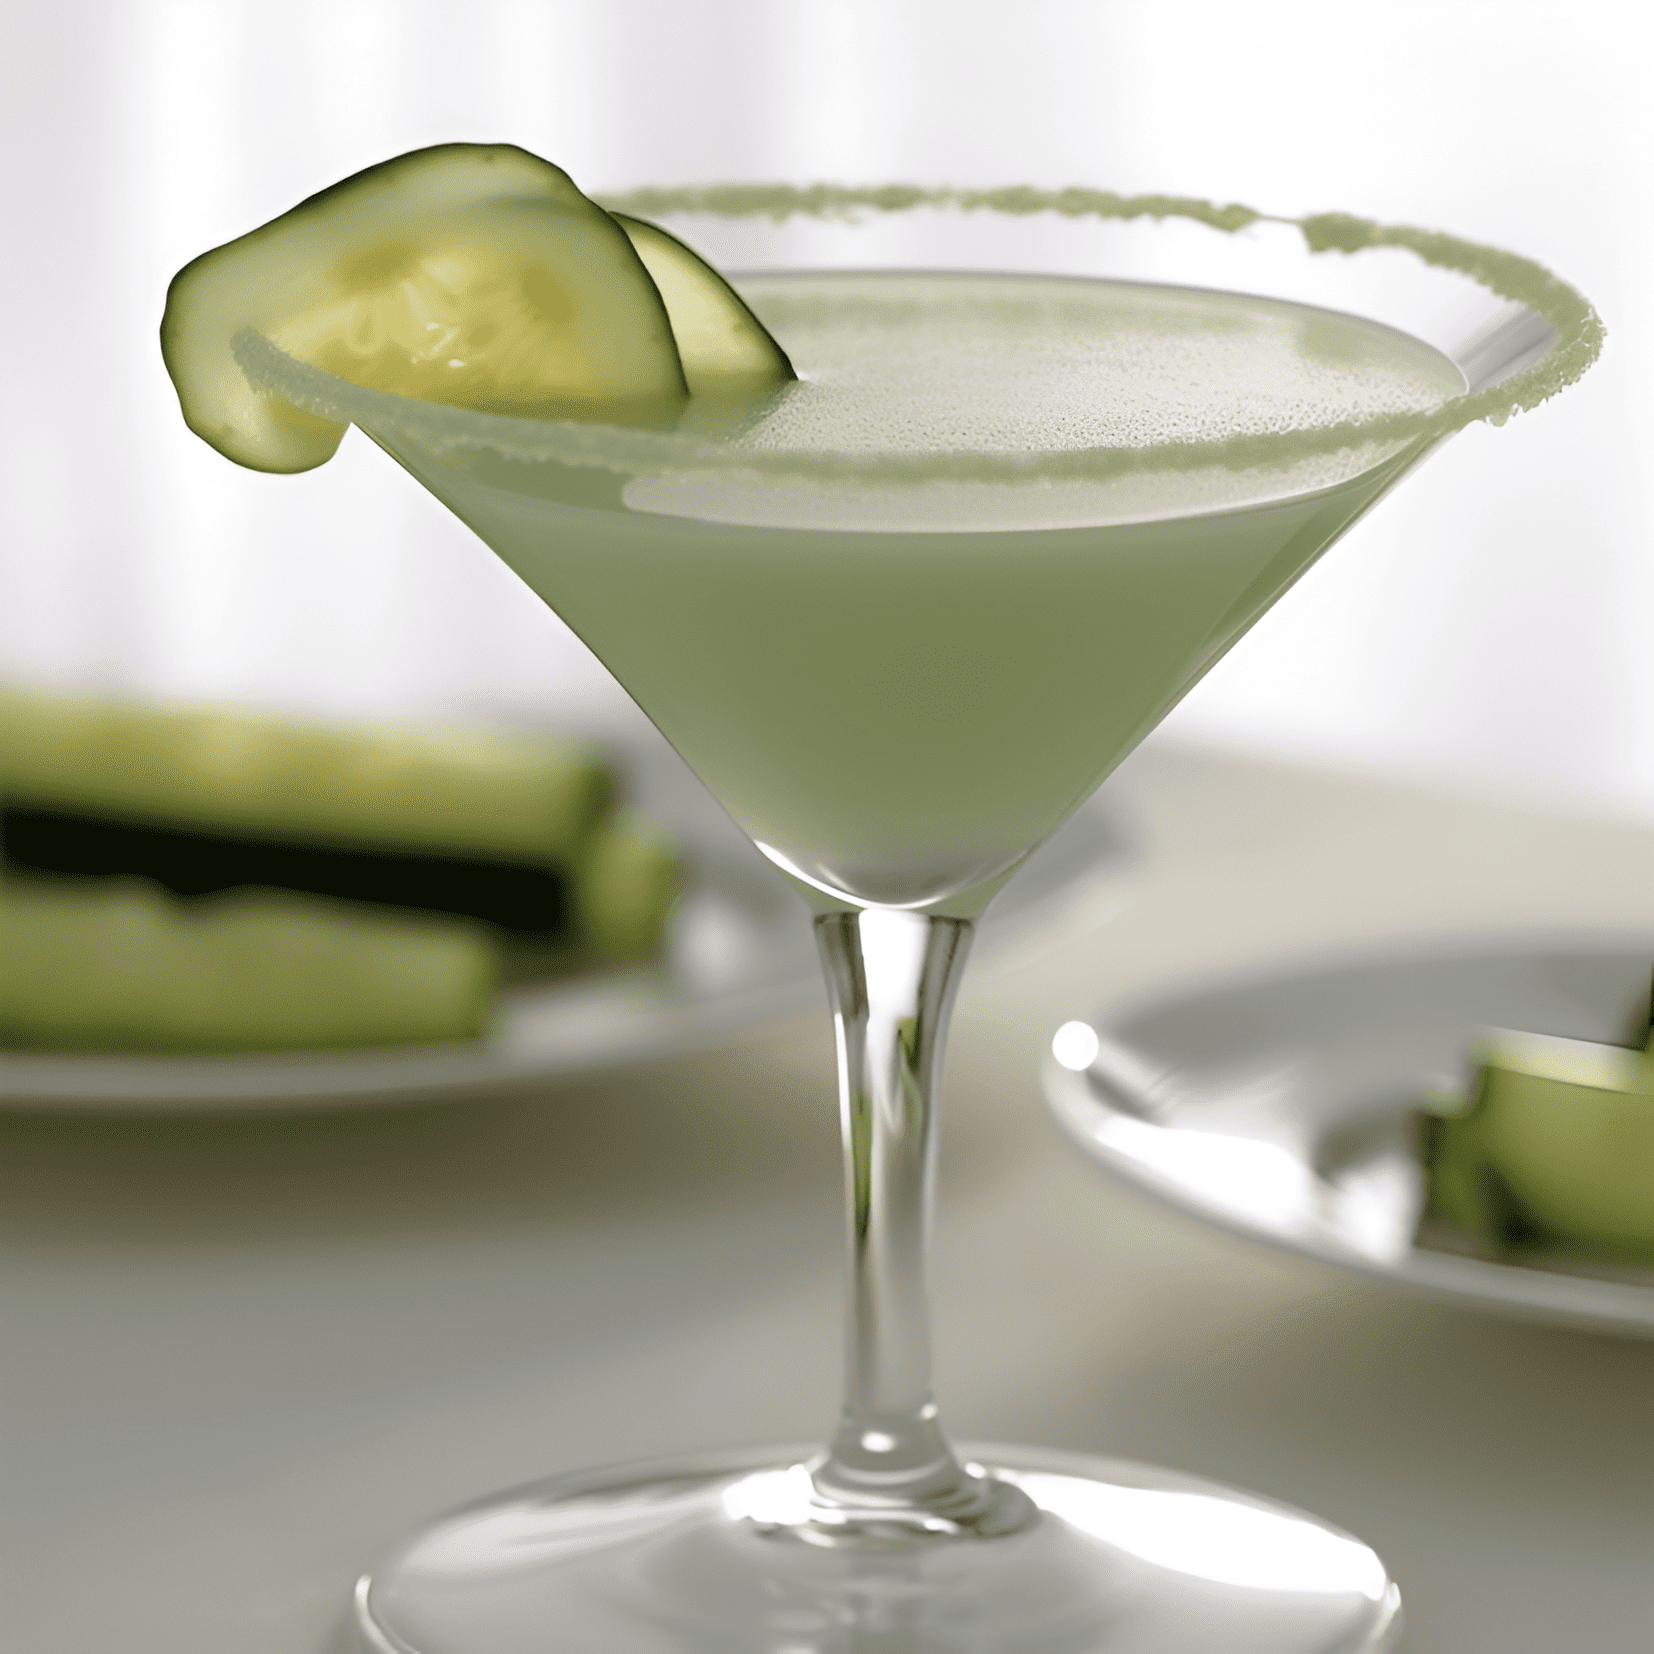 Cucumber Martini Cóctel Receta - El Cucumber Martini es crujiente, limpio y refrescante con un sutil toque de botánicos. Tiene un sabor ligero y ligeramente dulce con una textura suave y aterciopelada. El pepino agrega un sabor fresco y fresco que equilibra la nitidez del gin y la acidez del limón.